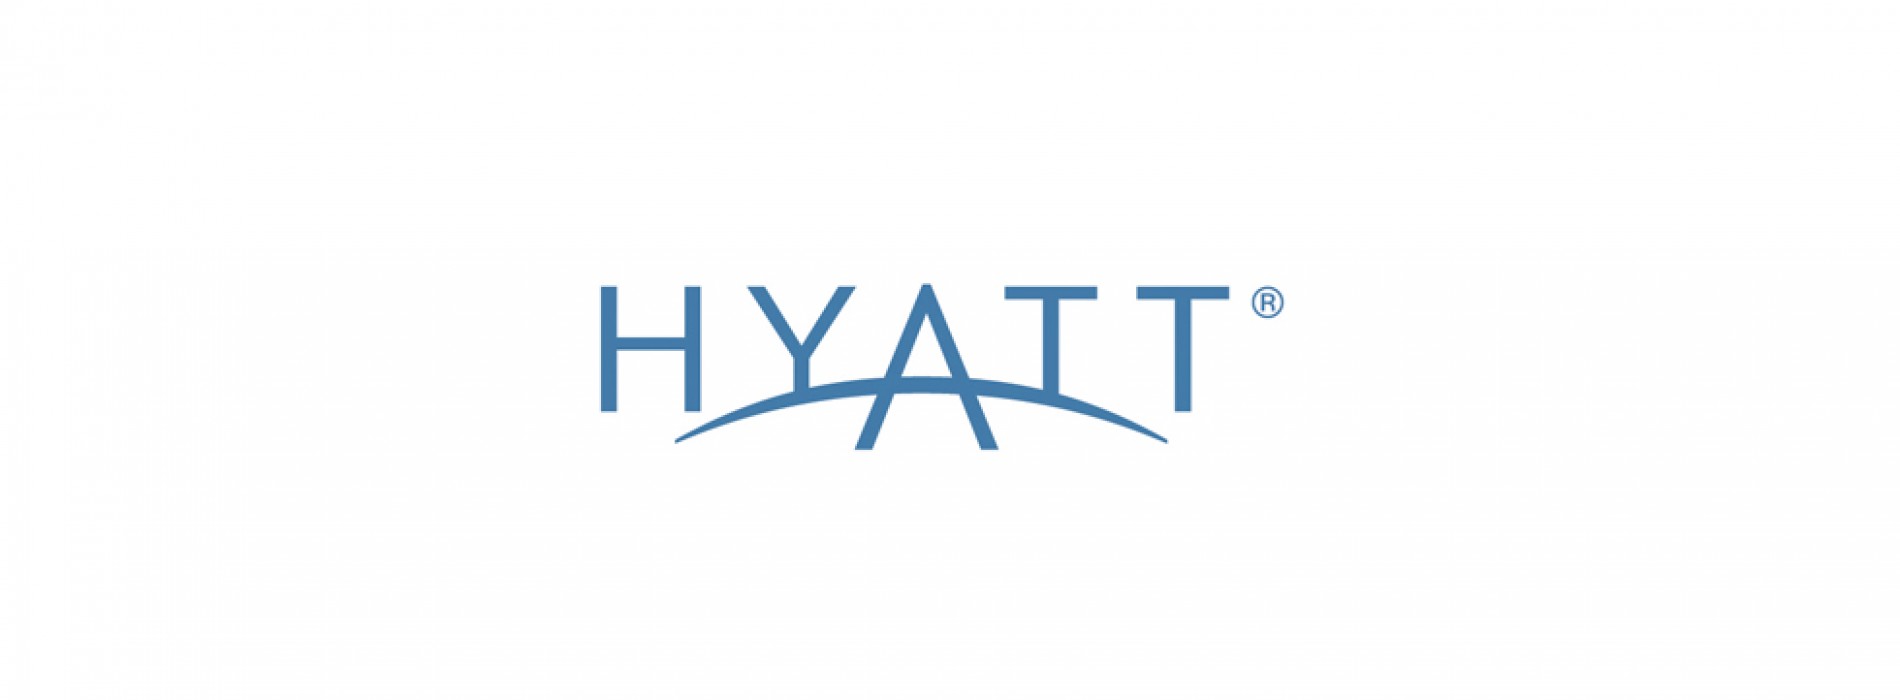 Hyatt brings new brand to India